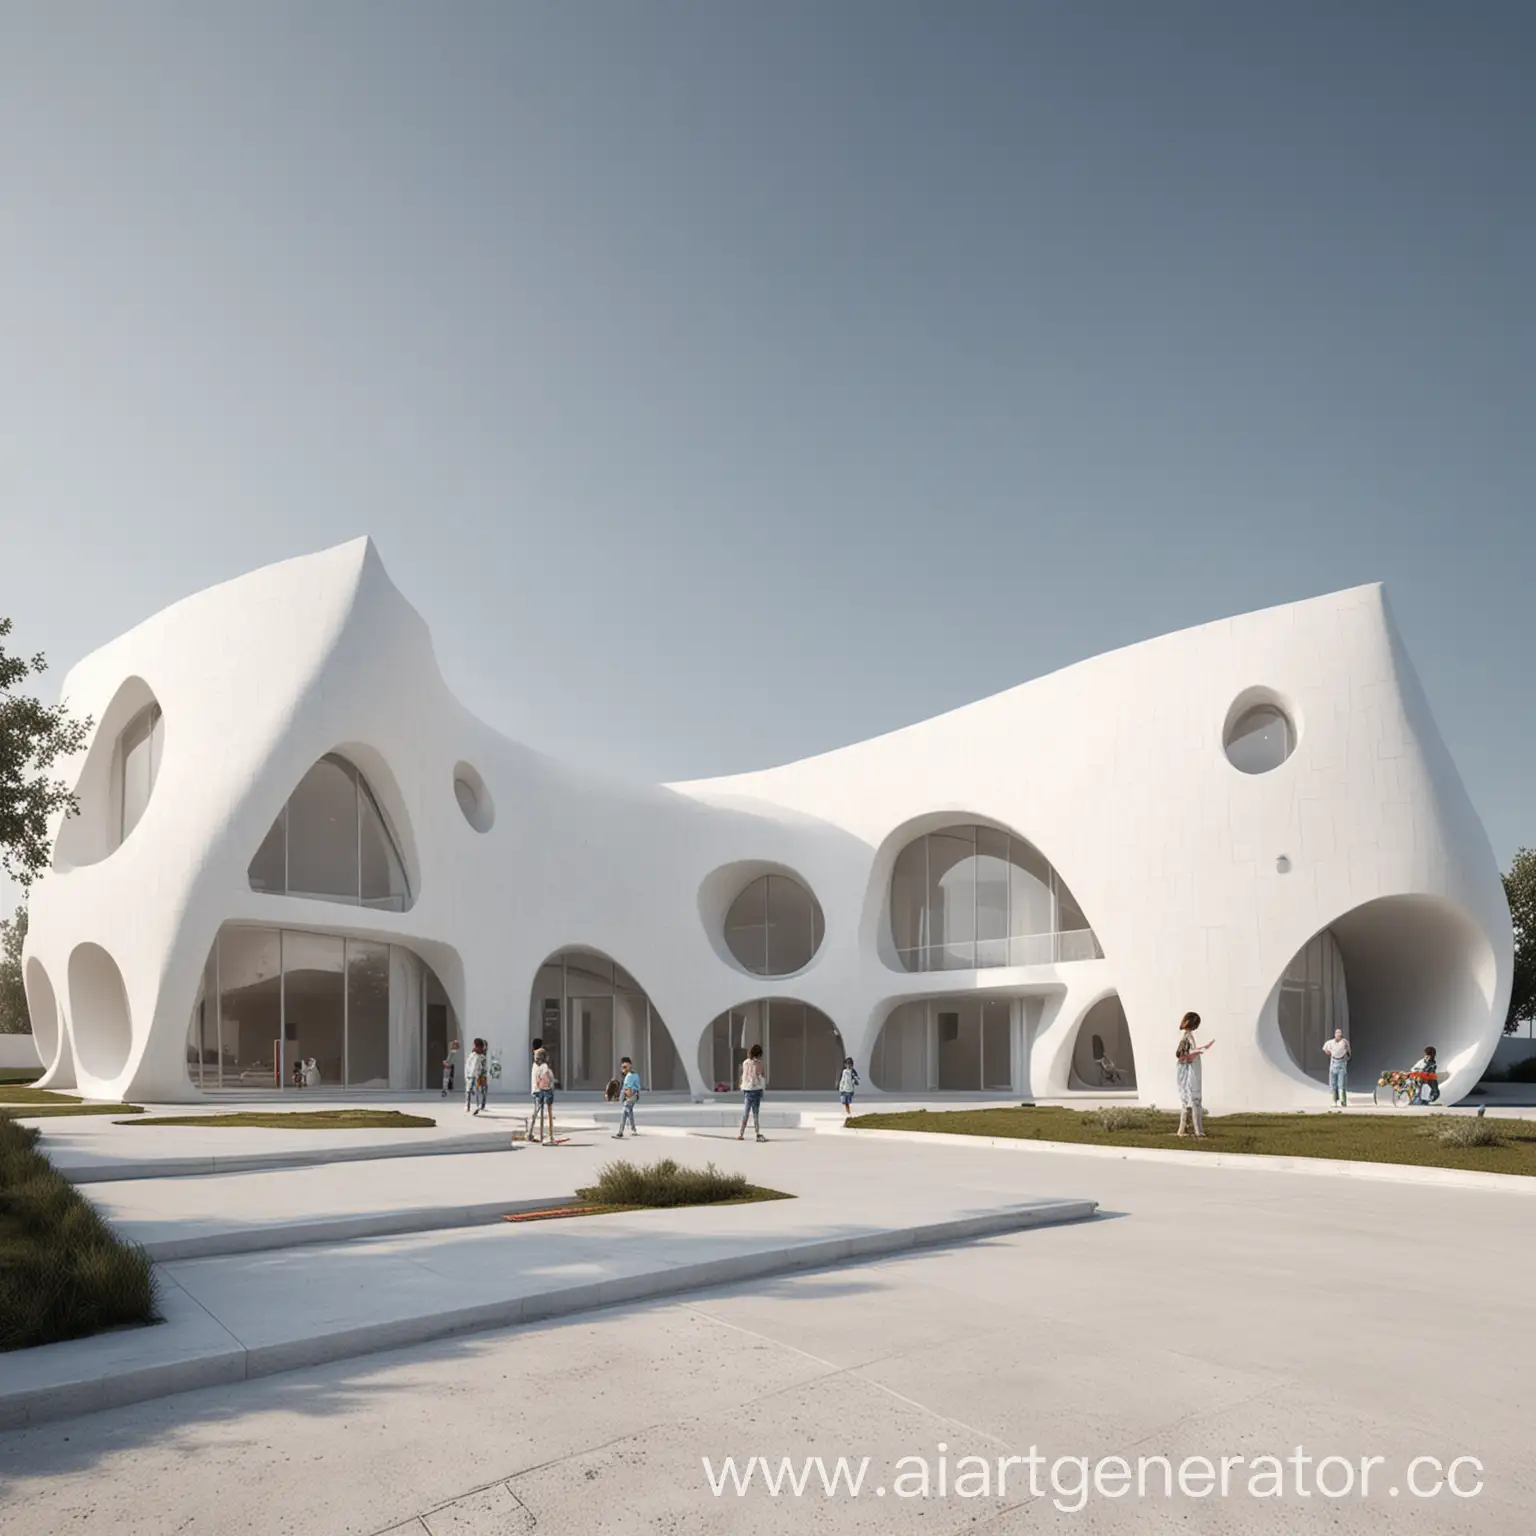 концепт архитектура центр детского творчества в стиле параметризм
и плавные формы в белом цвете снаружи
